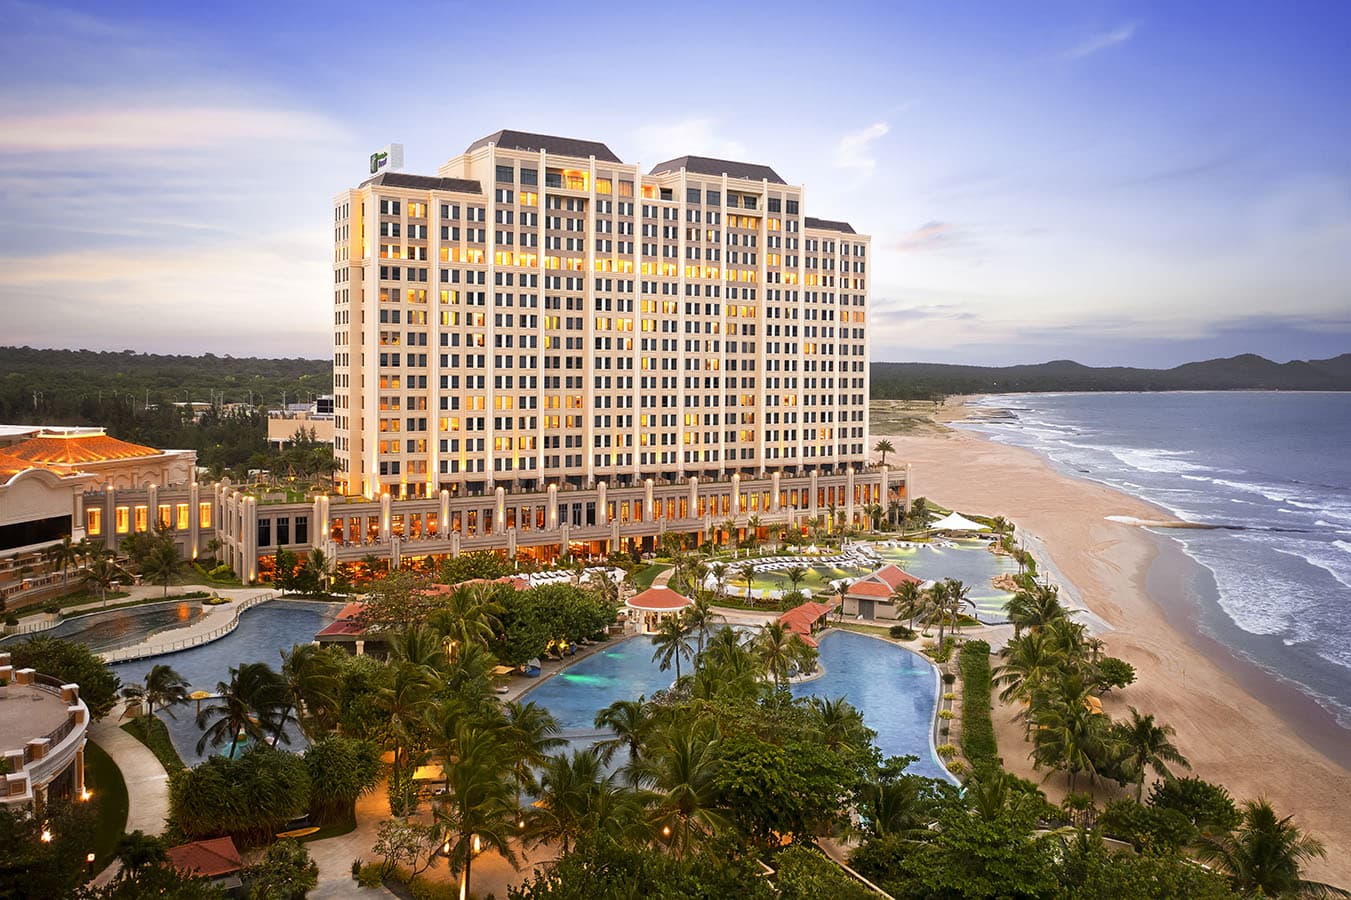 Holiday Inn Resort Ho Tram Beach vinh dự đạt chứng nhận 5 sao danh giá